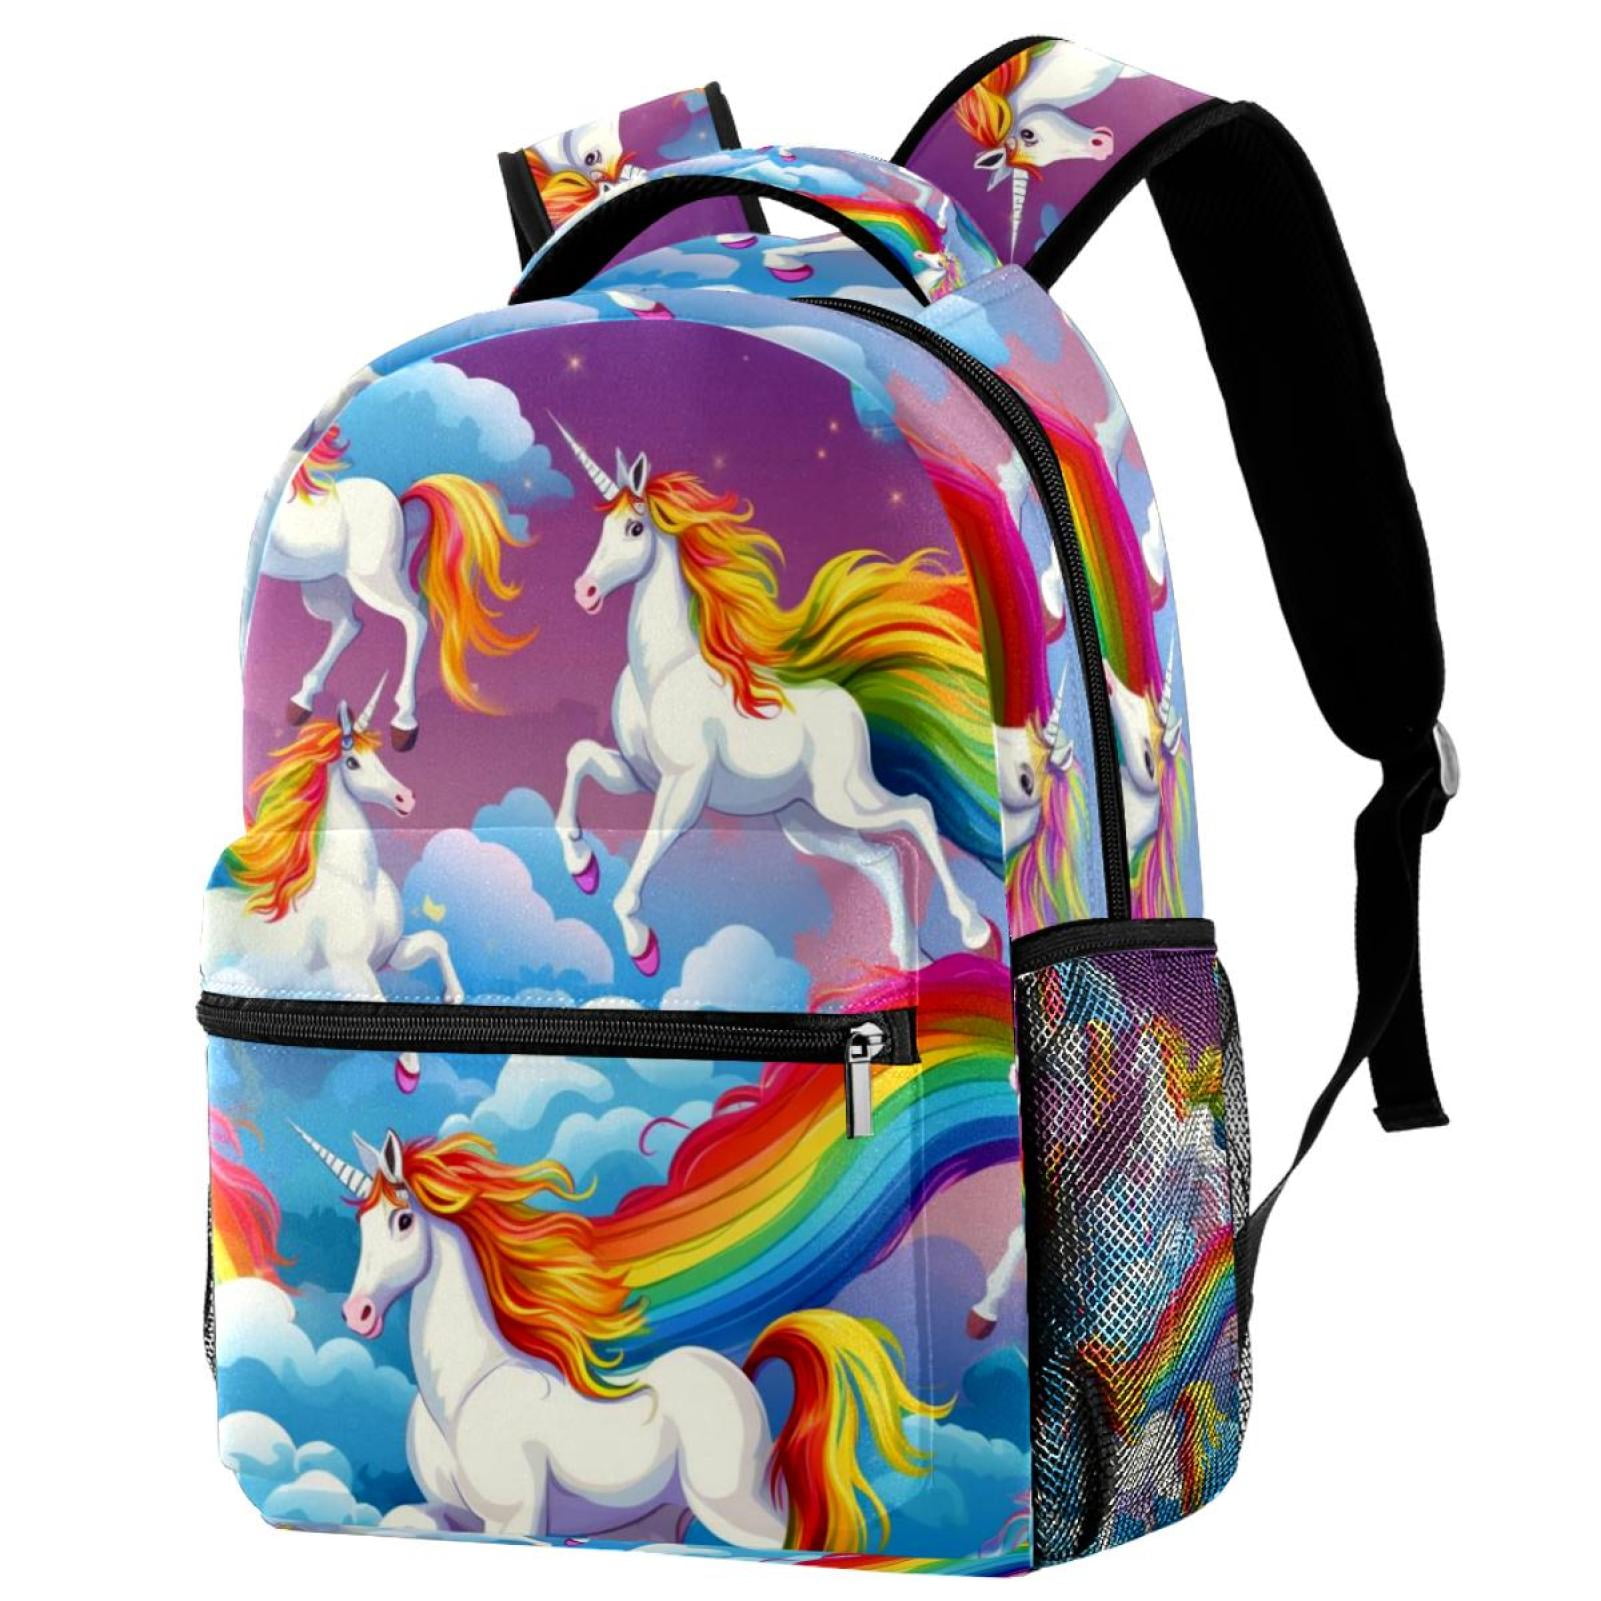 Rainbow Unicorn School Backpack , Travel Bag for Women Girls Men Boys ...